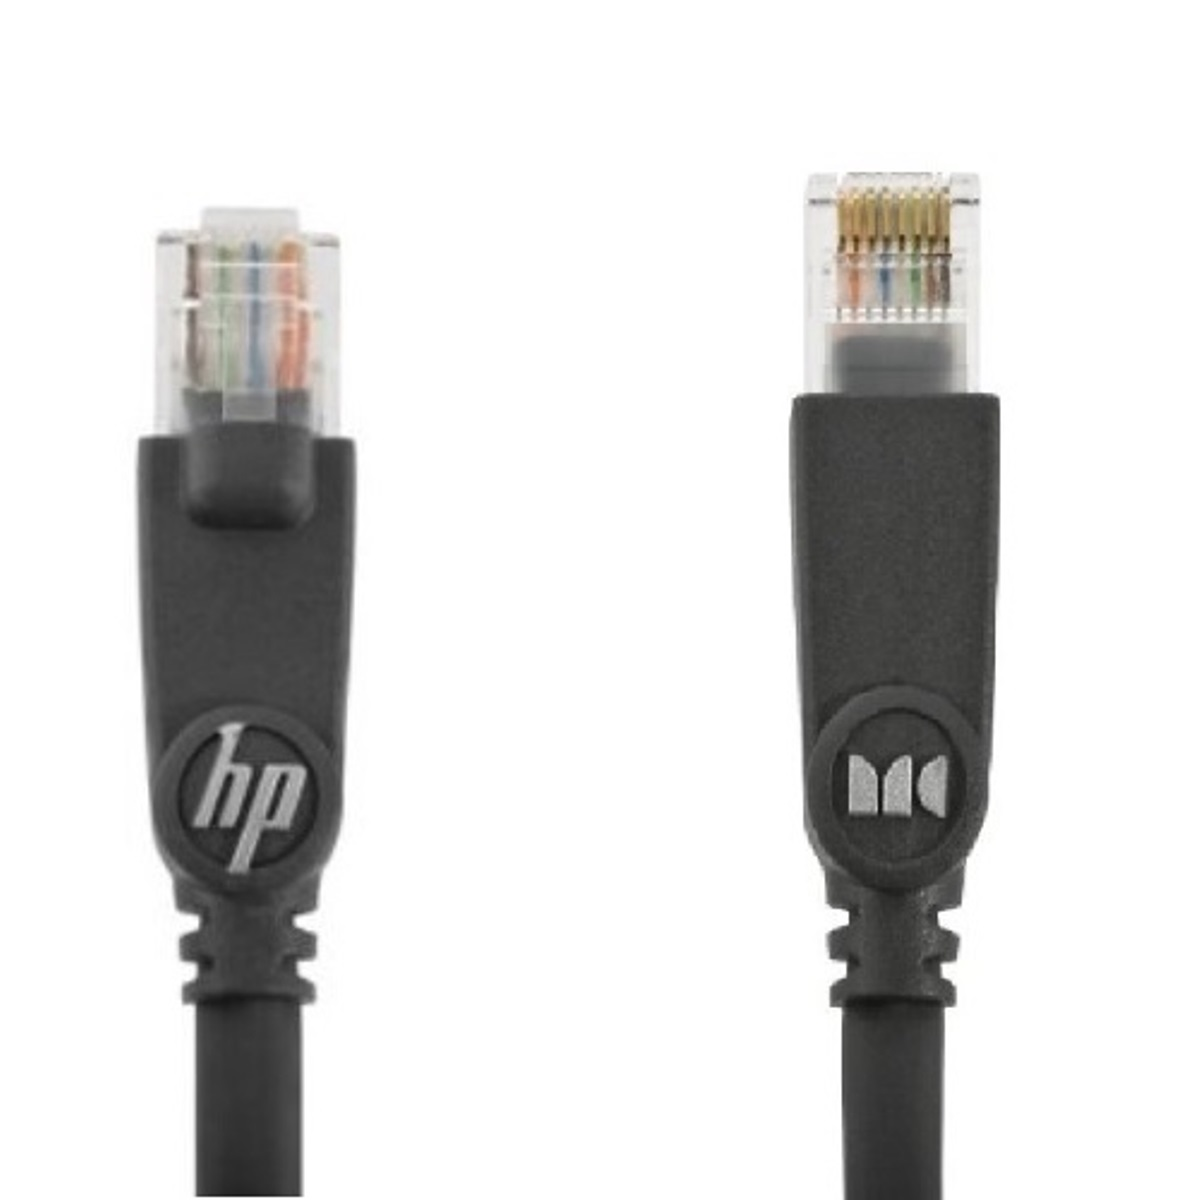 Cable Ethernet Kabel, CABLE HPM 700 MONSTER Internet Schwarz